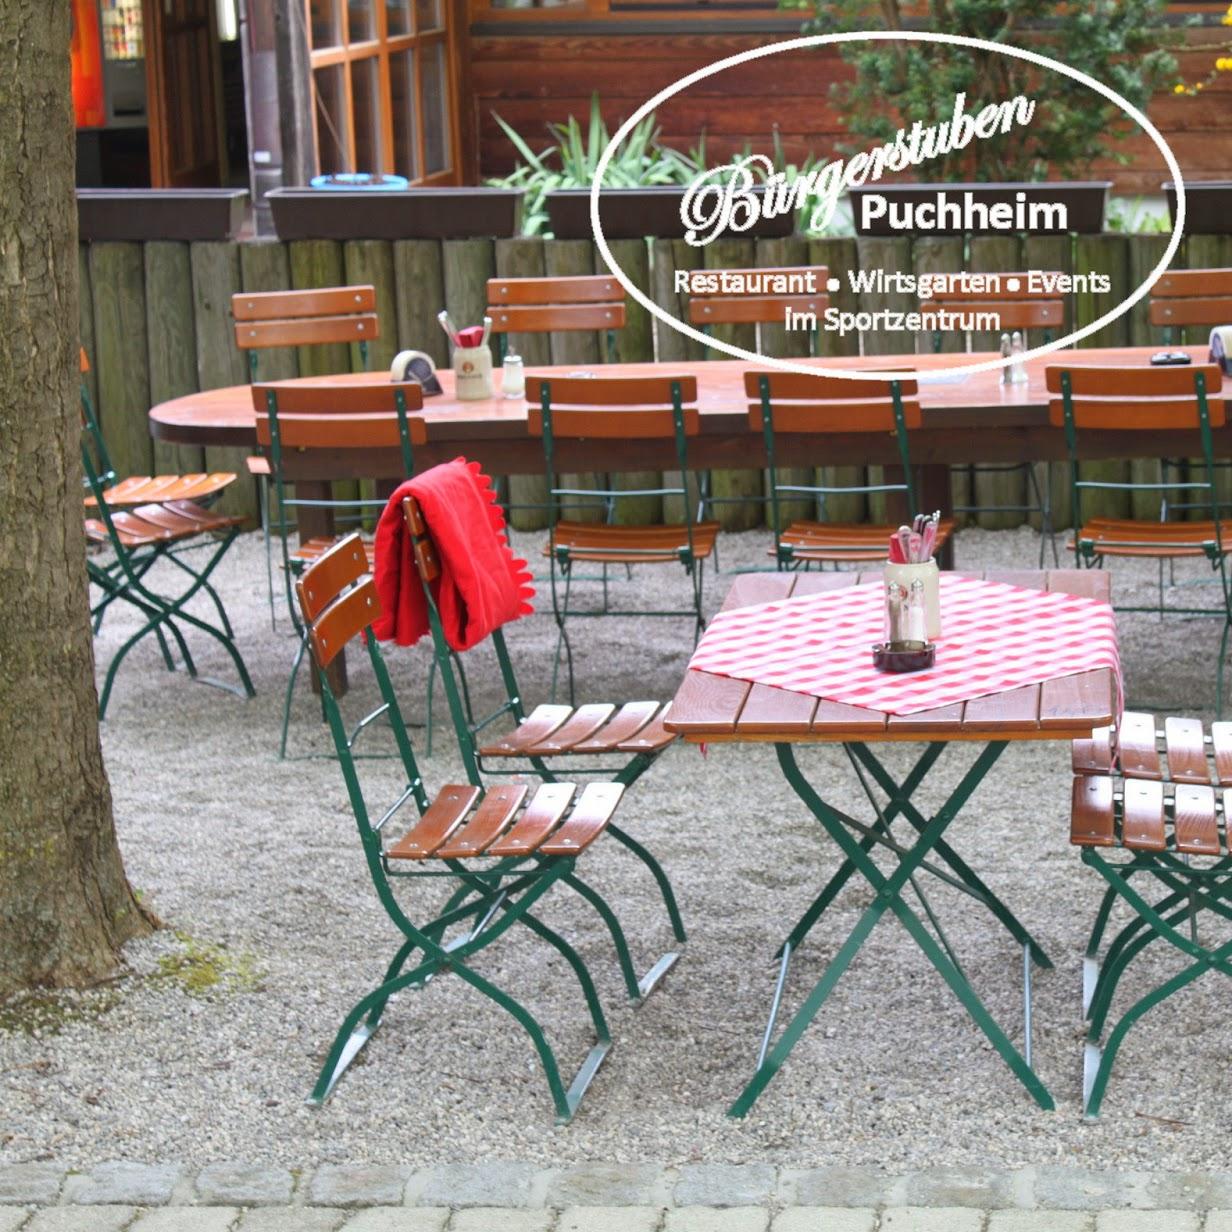 Restaurant "Bürgerstuben" in Puchheim